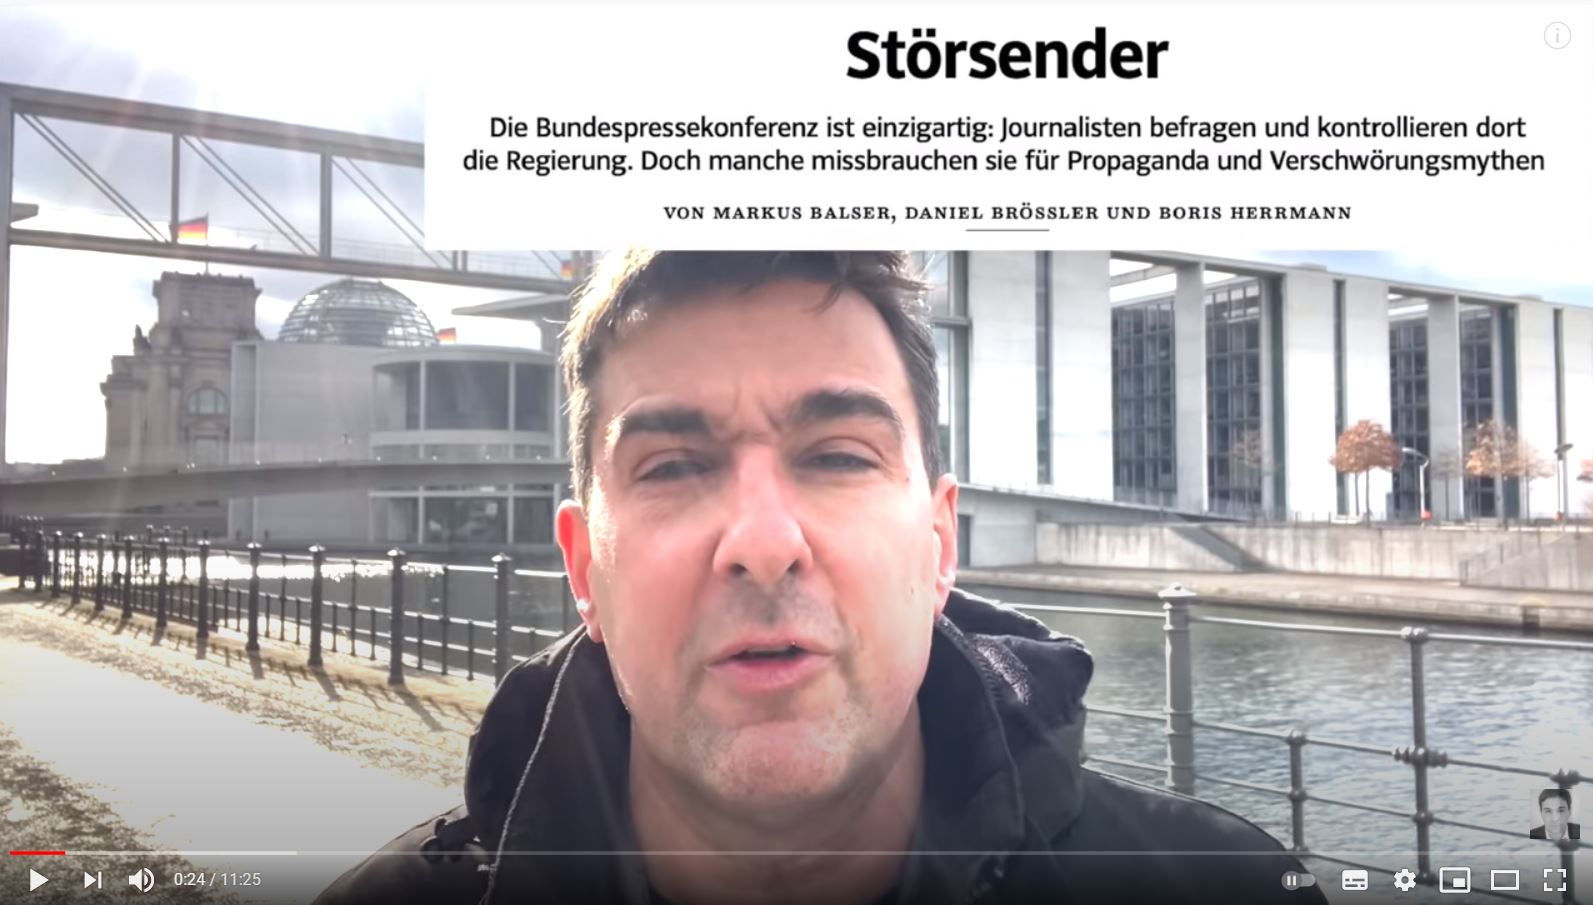 Wie mich die Süddeutsche aus der Bundespressekonferenz mobben will – neuer deutscher Journalismus